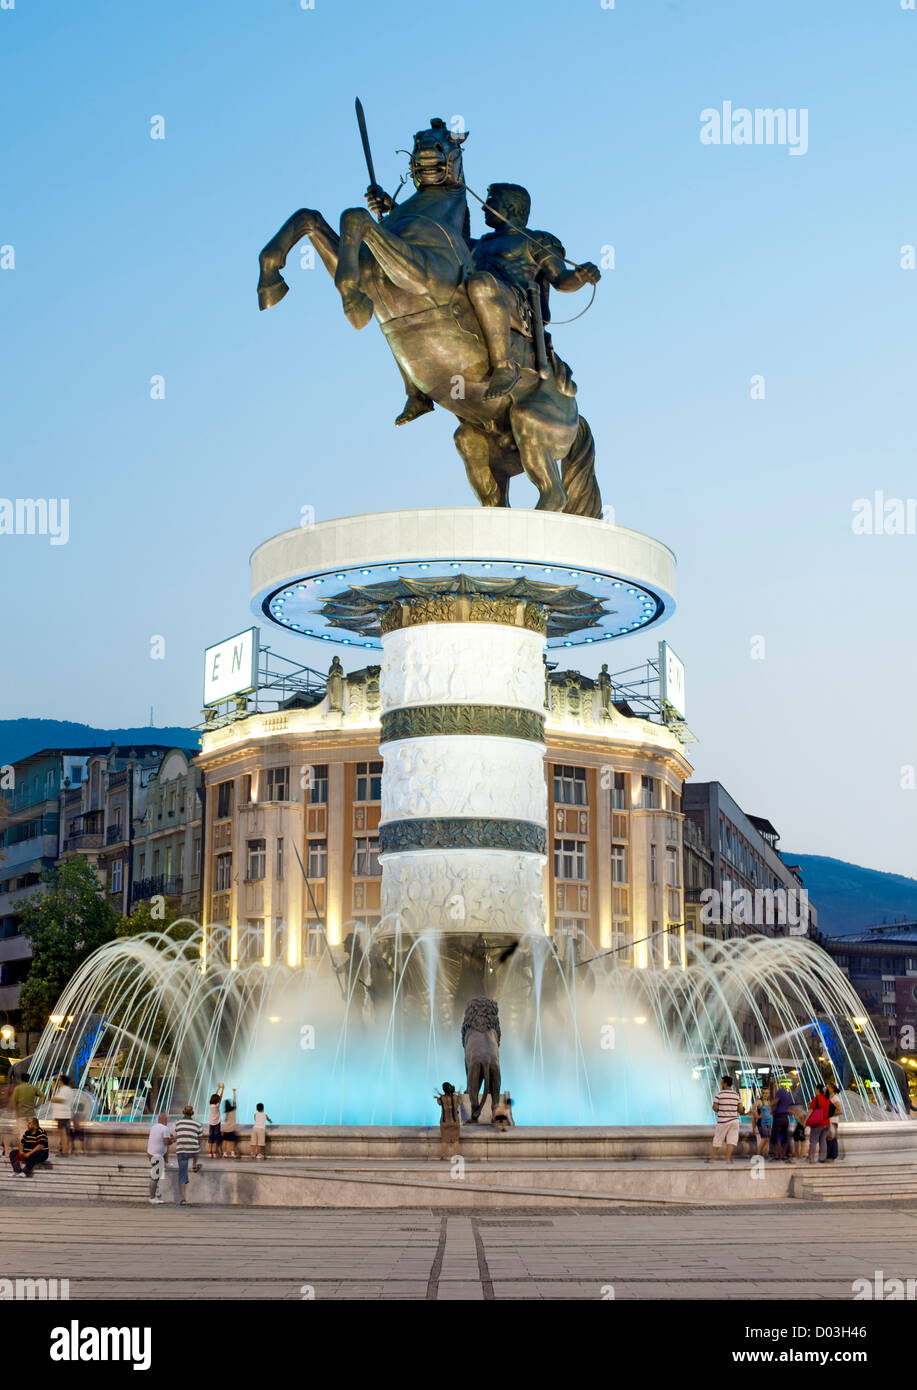 "Krieger auf einem Pferd", einer 28 Meter hohen Fontäne im Zentrum von Skopje, die Hauptstadt von Mazedonien. Stockfoto